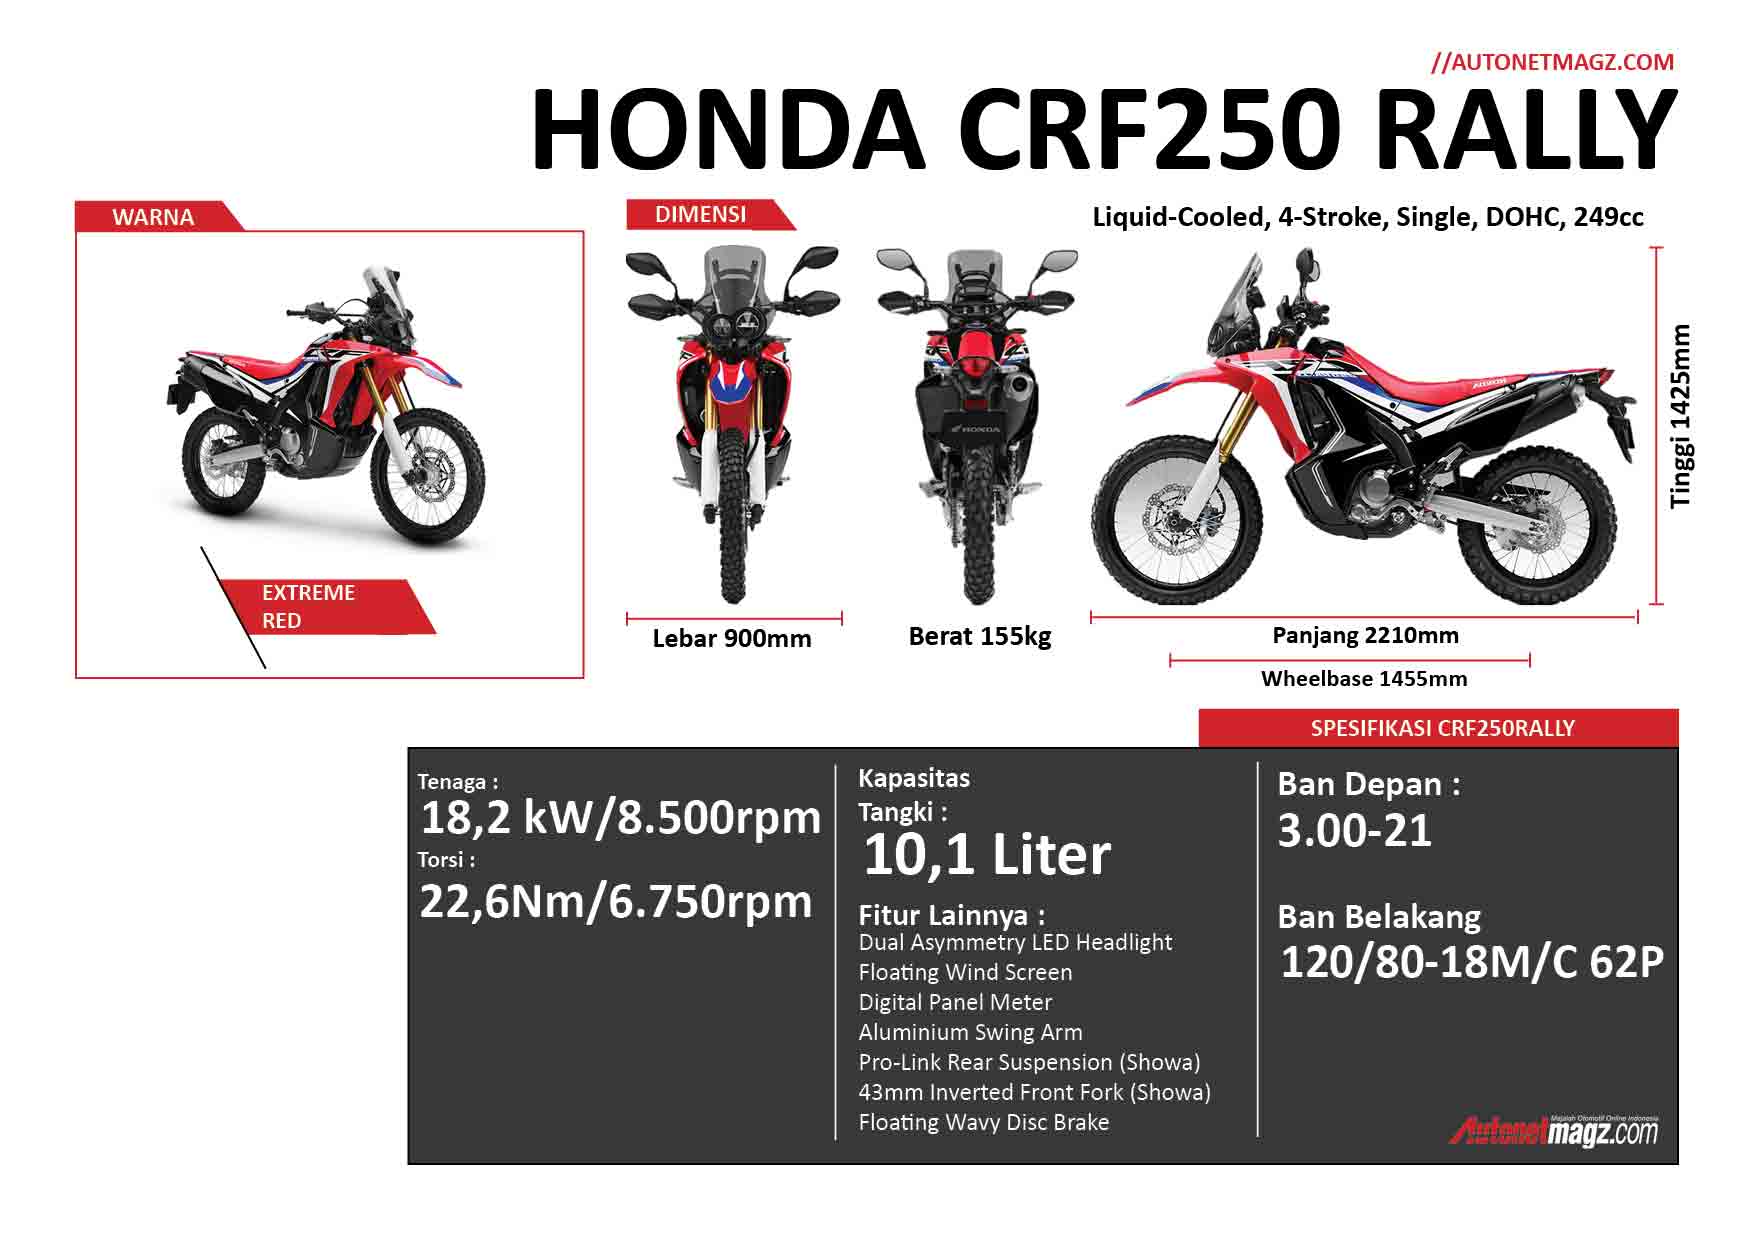 Honda, Infografik-2: Honda CRF250RALLY, Replika Kecil dari Motor Rally Dakar Honda